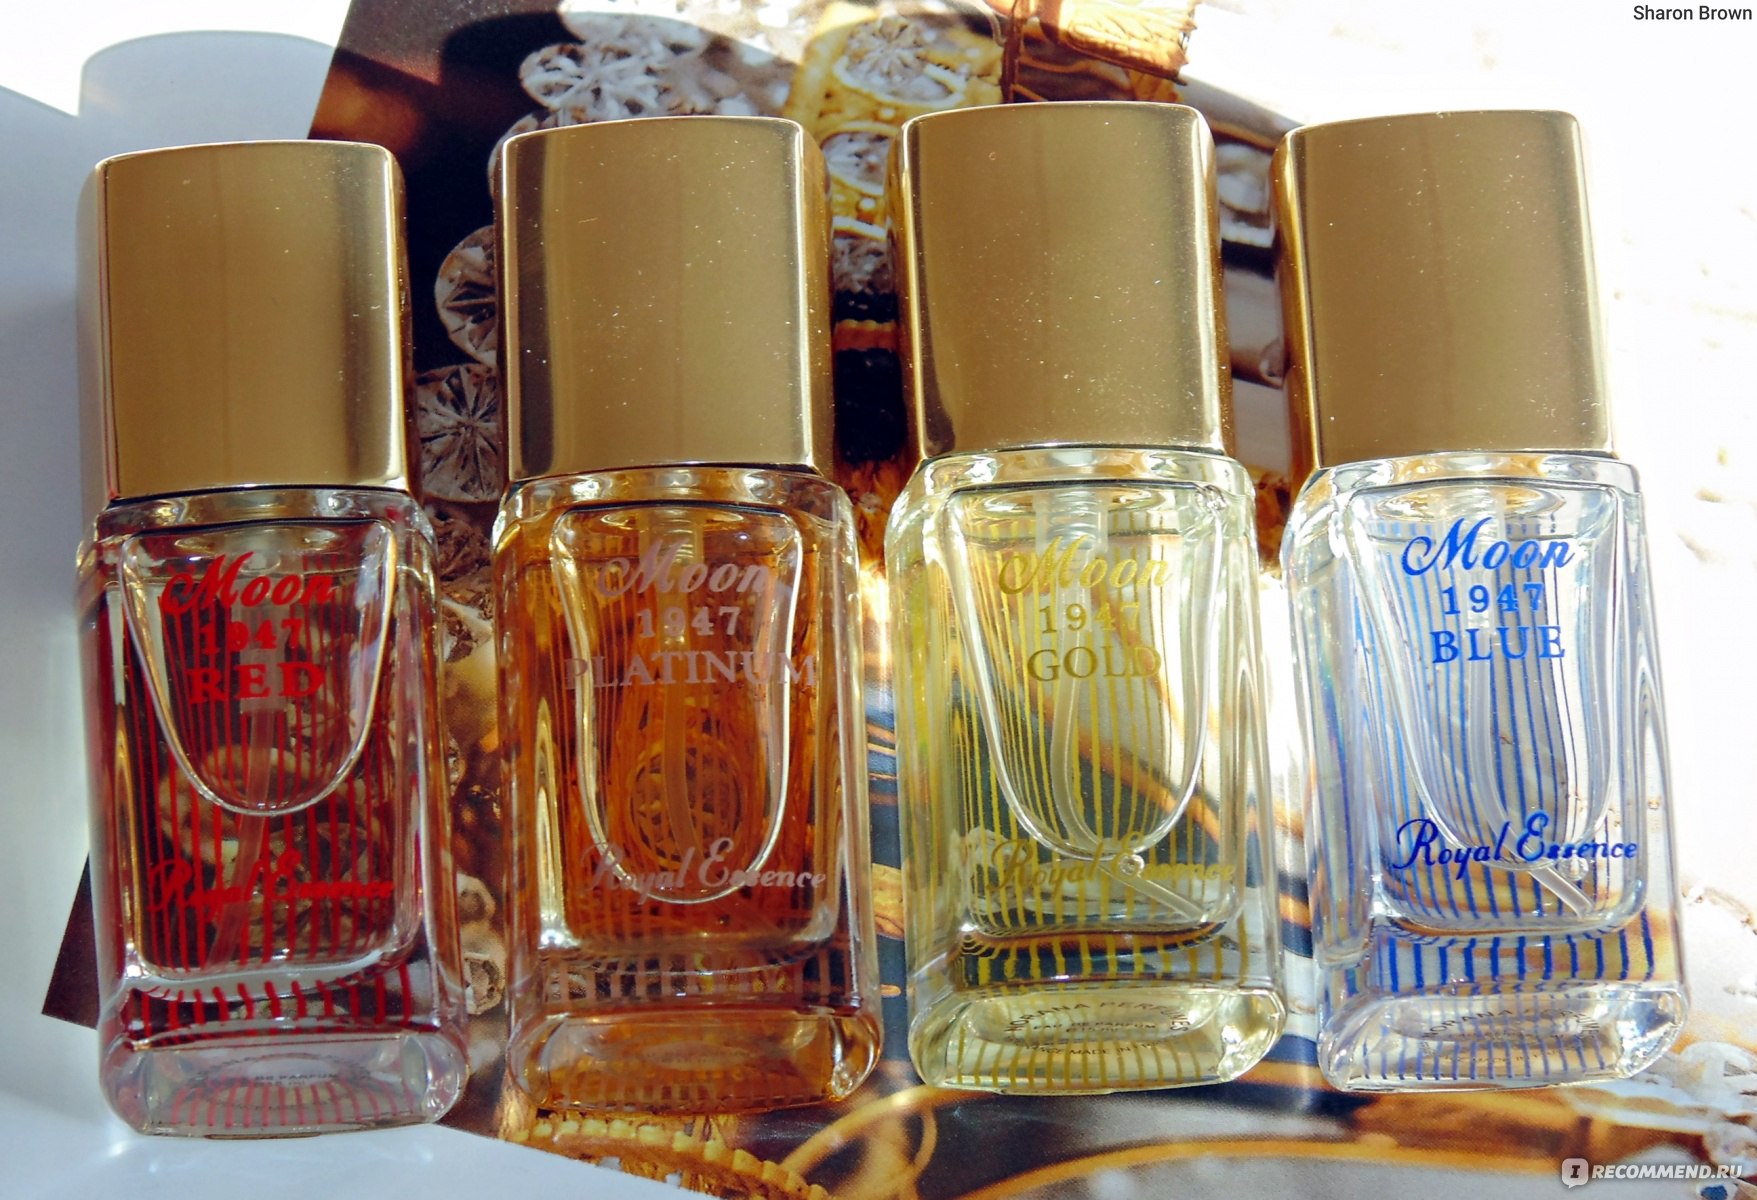 1947 gold. Духи Мун 1947 Голд. Норана Парфюм Мон 1947 Голд. Norana Perfumes Royal Essence. Noran Perfumes набор миниатюр.